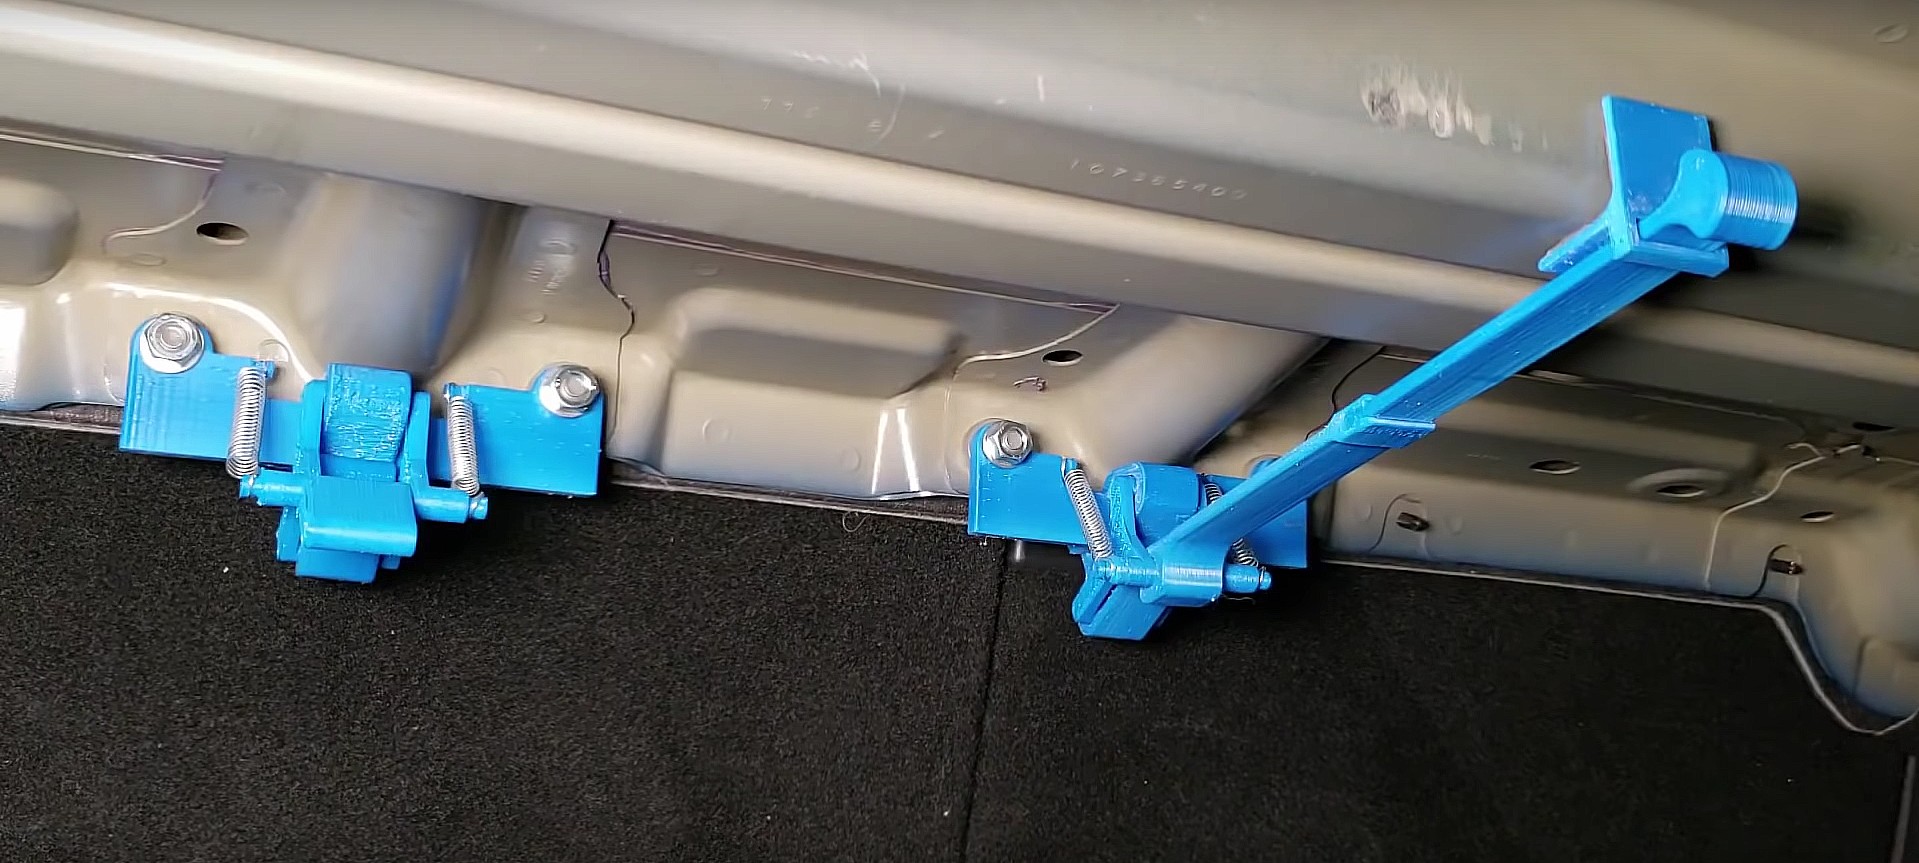 Tesla Model 3 owner 3D prints rear seat lock that prevents break-ins